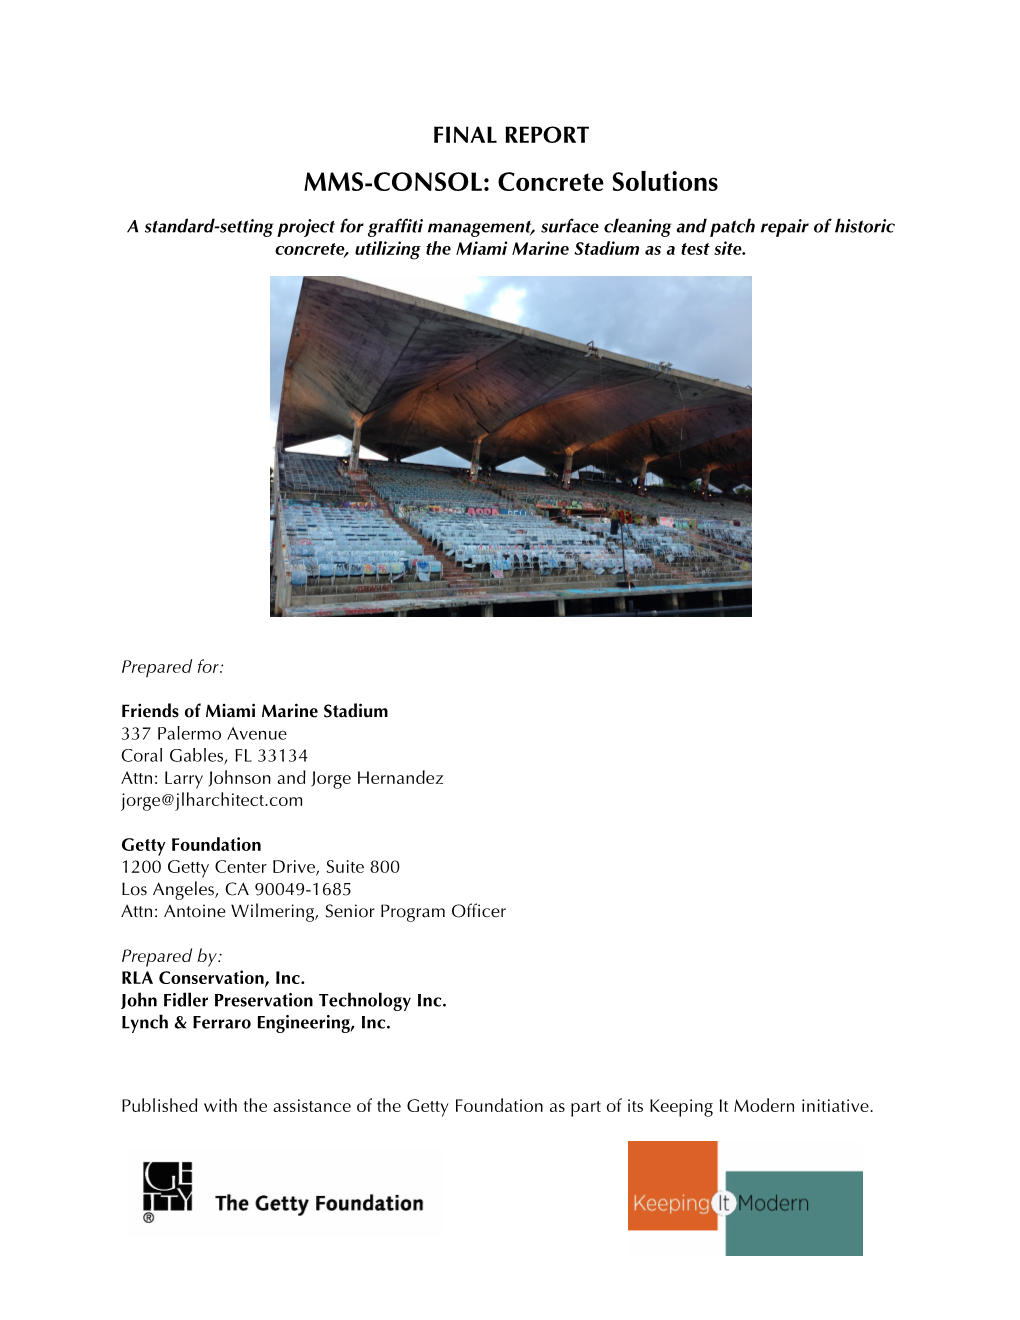 Miami Marine Stadium Concrete Solutions Report